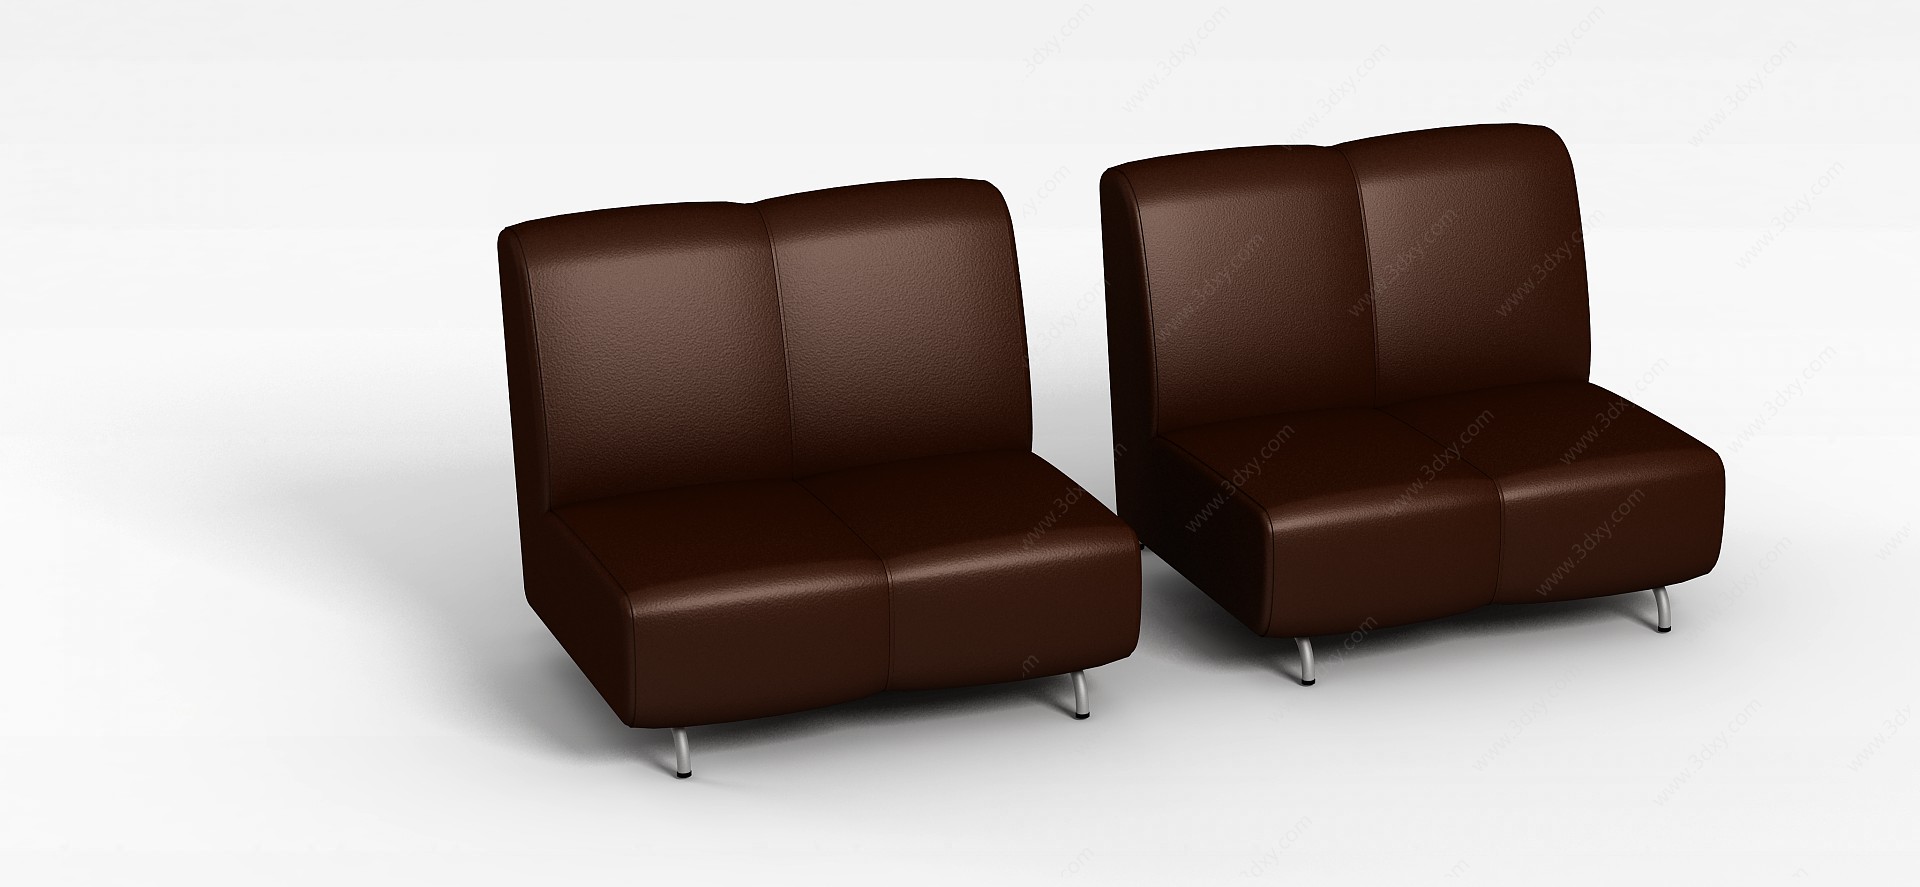 办公室休闲沙发椅3D模型